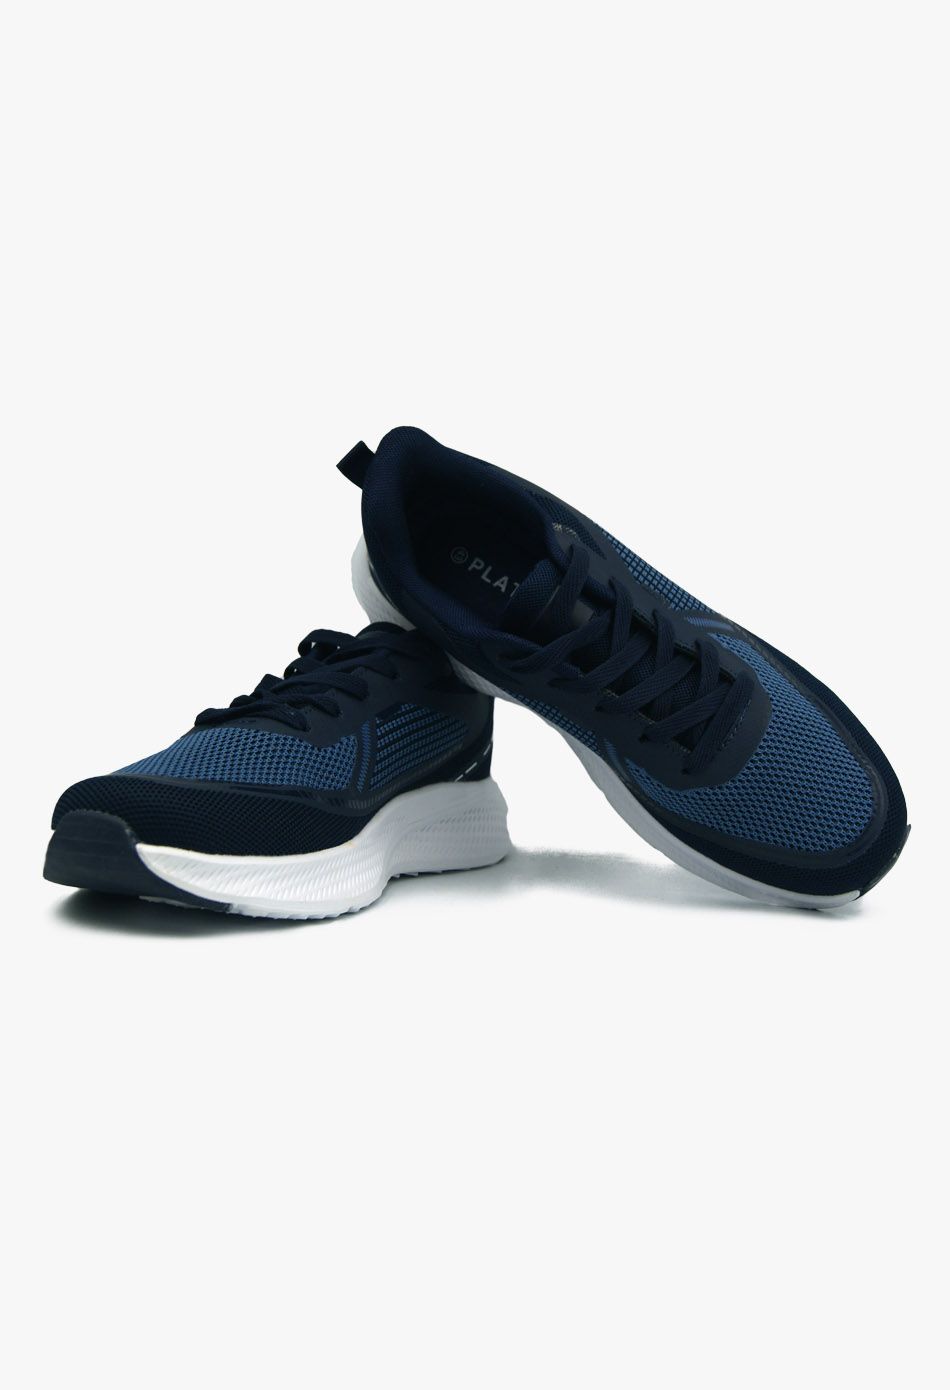 Ανδρικά Αθλητικά Παπούτσια για Τρέξιμο Μπλε / 153A-navy ΑΘΛΗΤΙΚΑ & SNEAKERS joya.gr